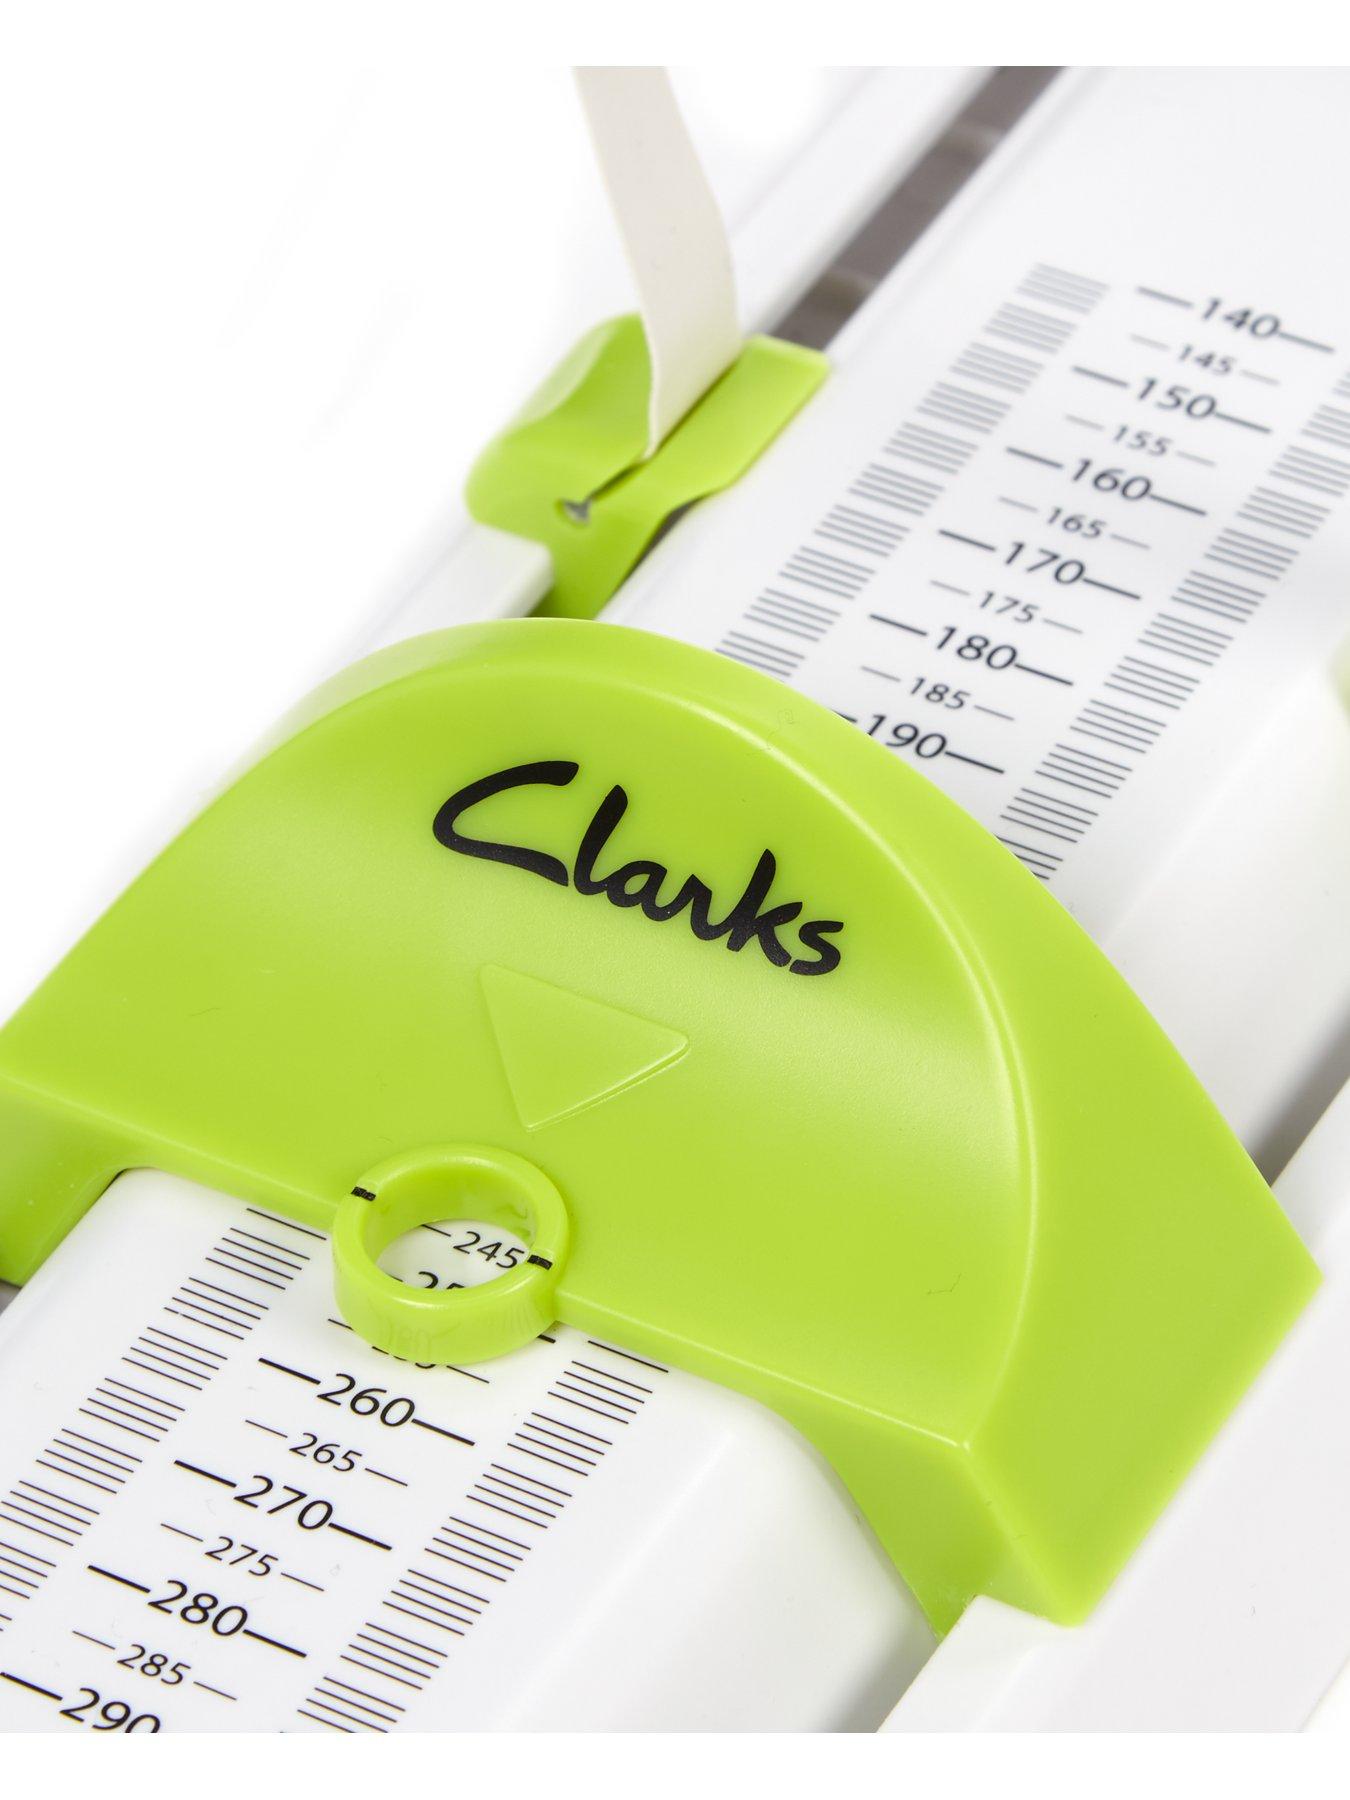 clarks foot gauge